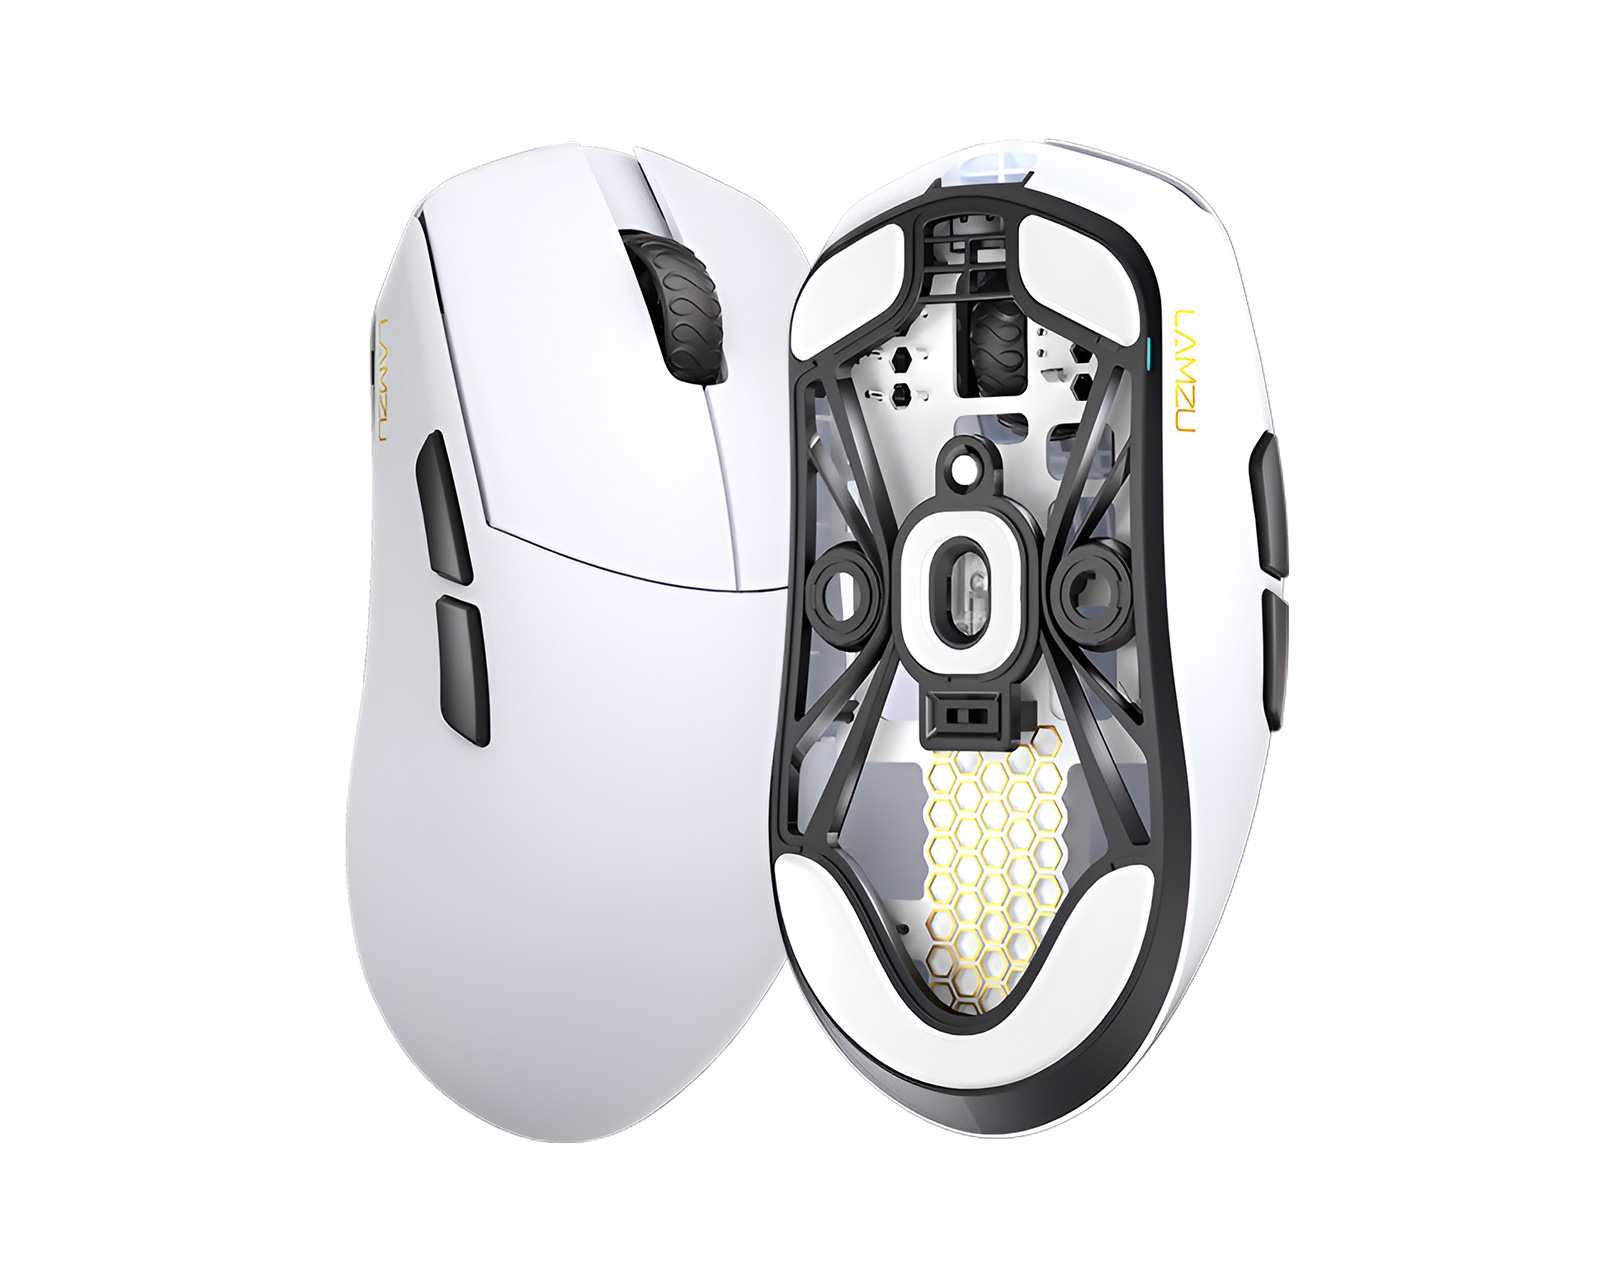 Lamzu MAYA Wireless Superlight Gaming Mouse - White